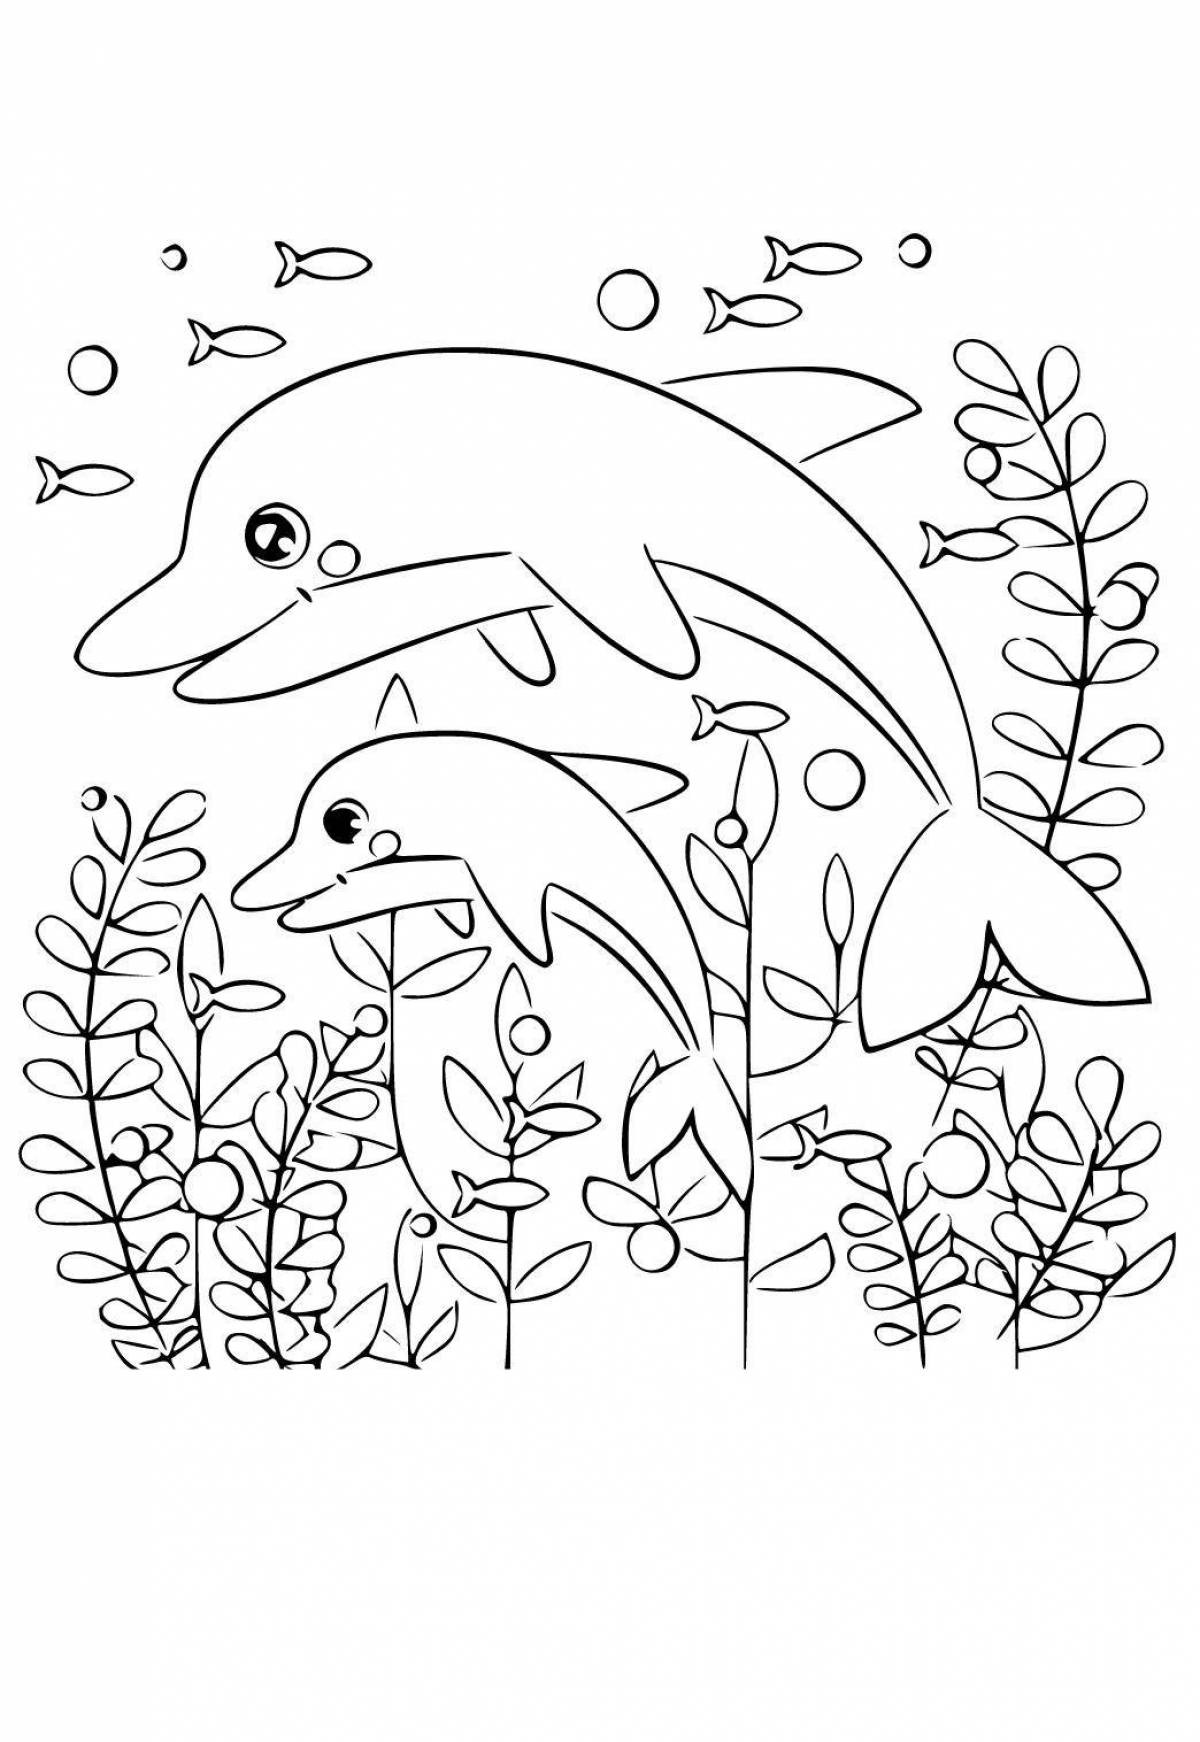 Яркая раскраска дельфинов для детей